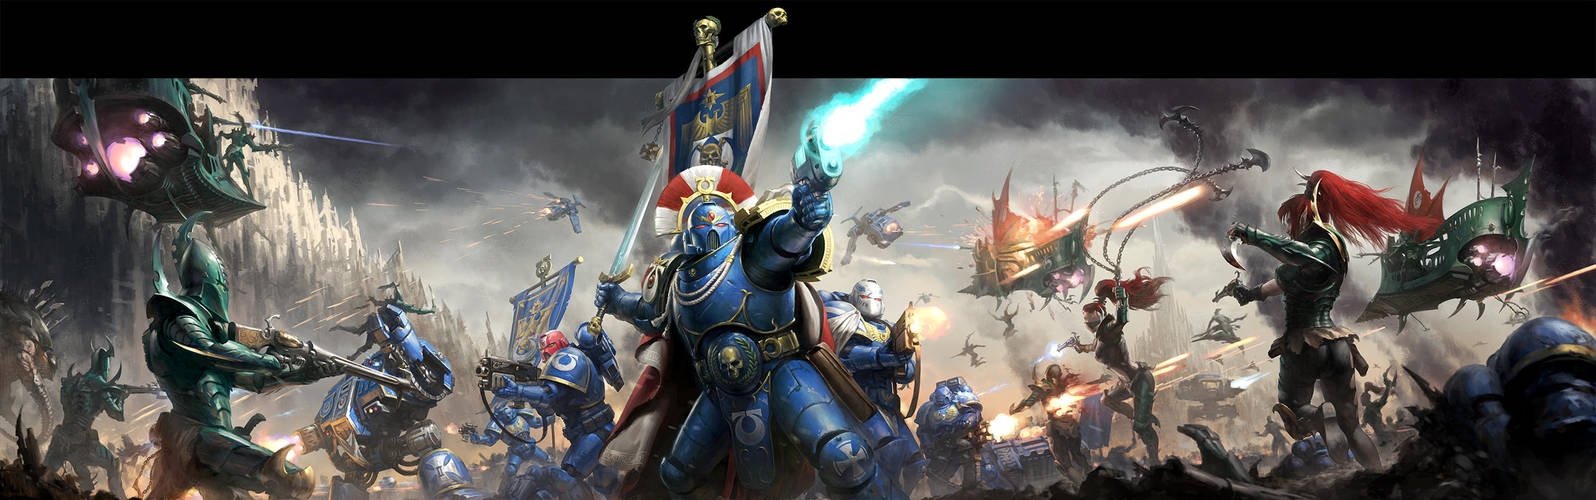 Warhammer 40,000 - Conquest